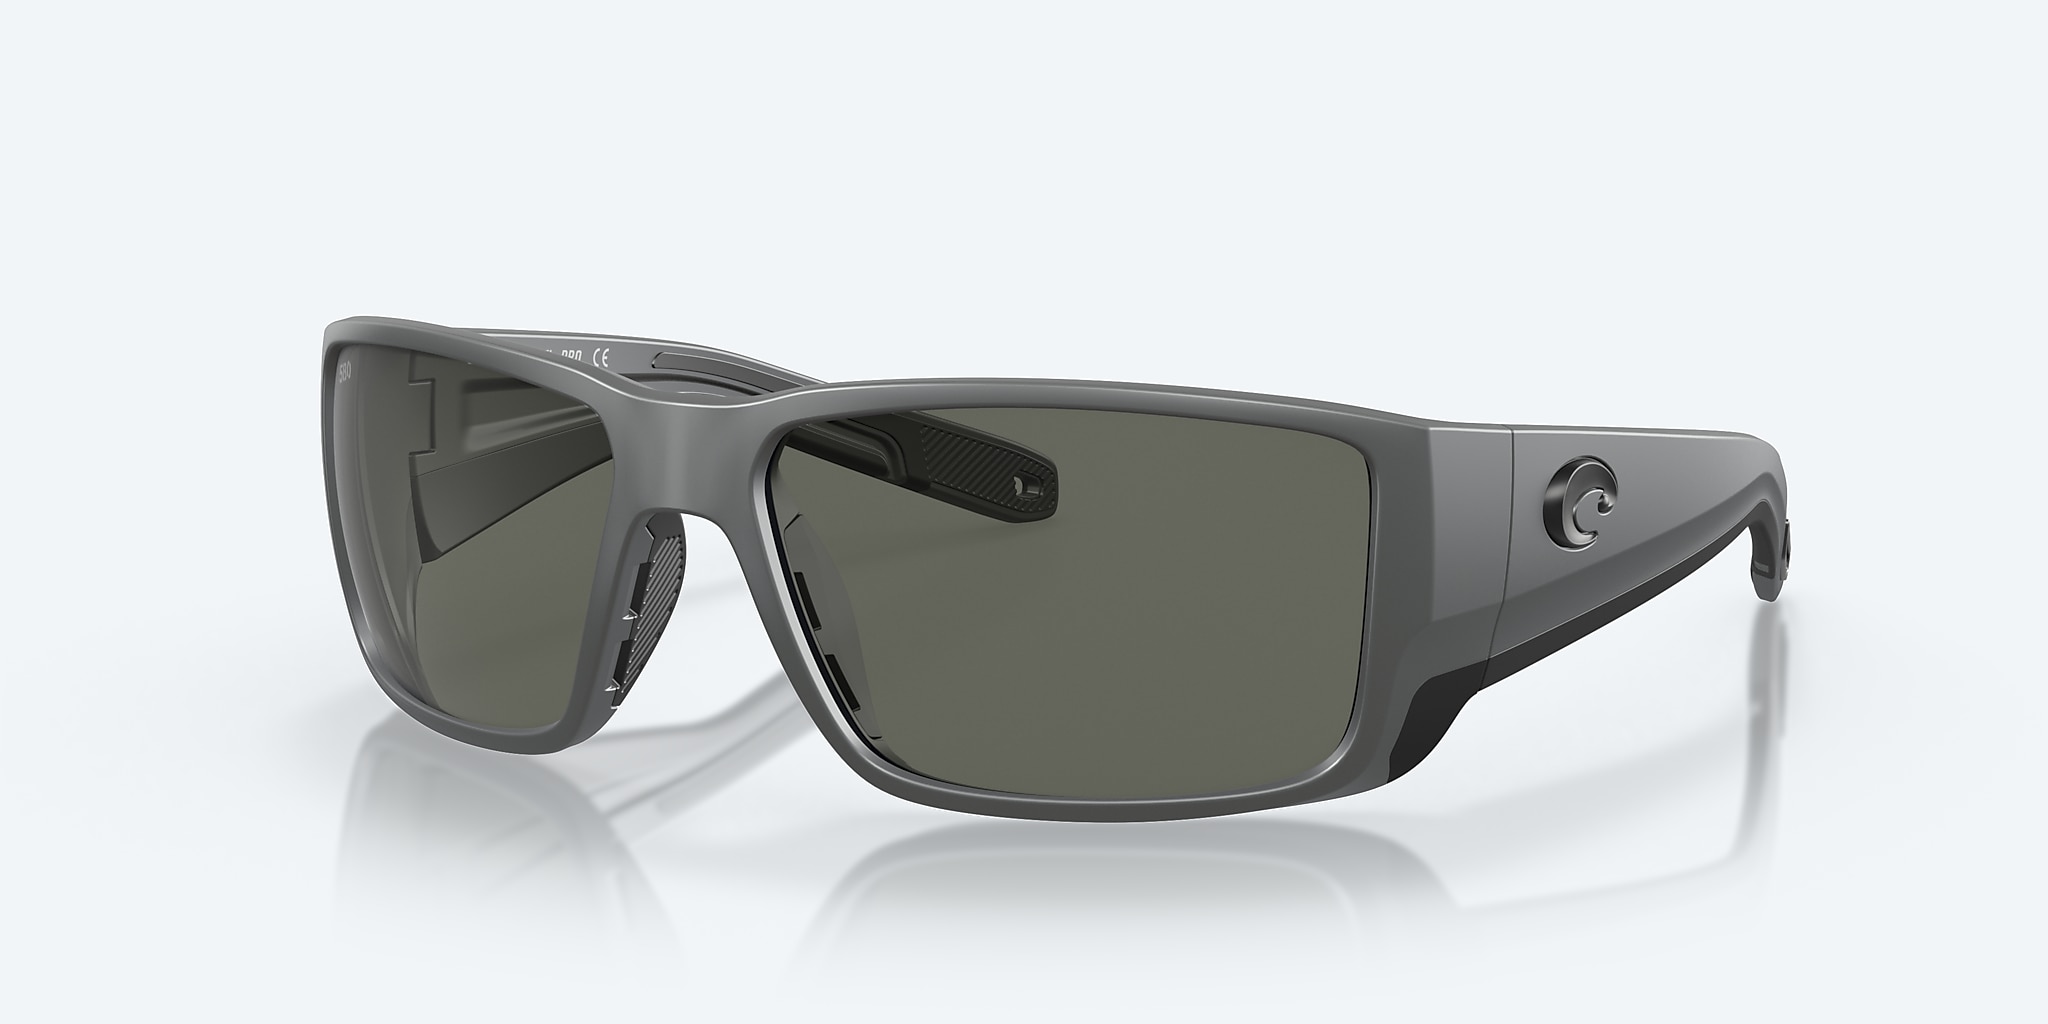 Blackfin PRO Polarized Sunglasses in Gray